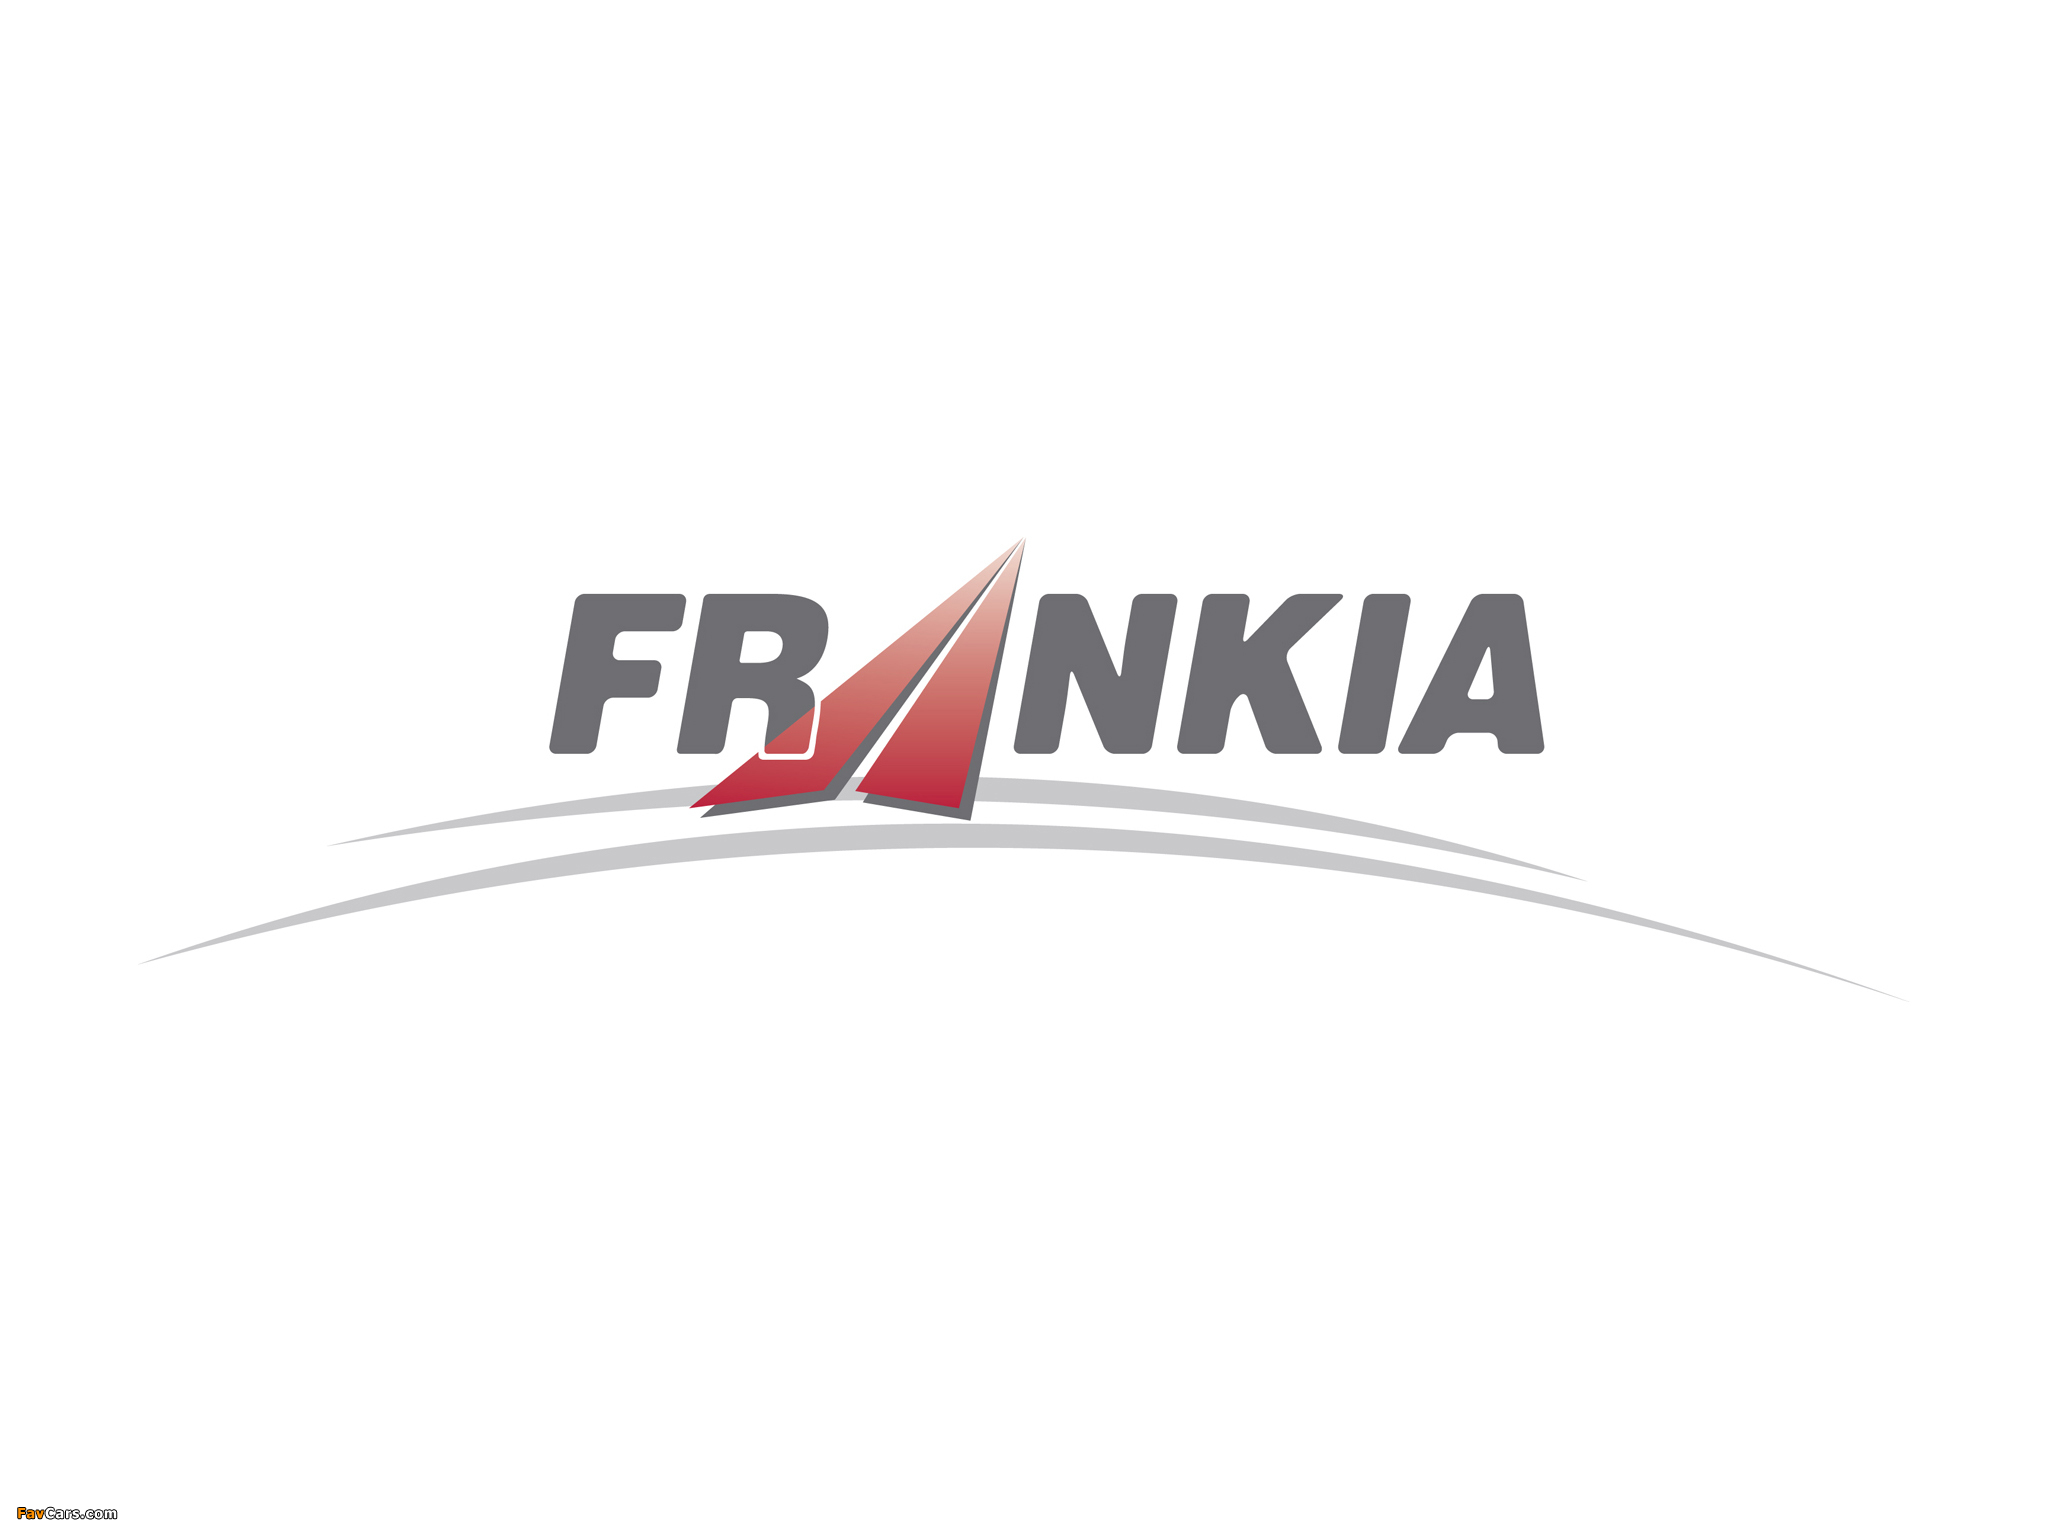 Frankia pictures (2048 x 1536)